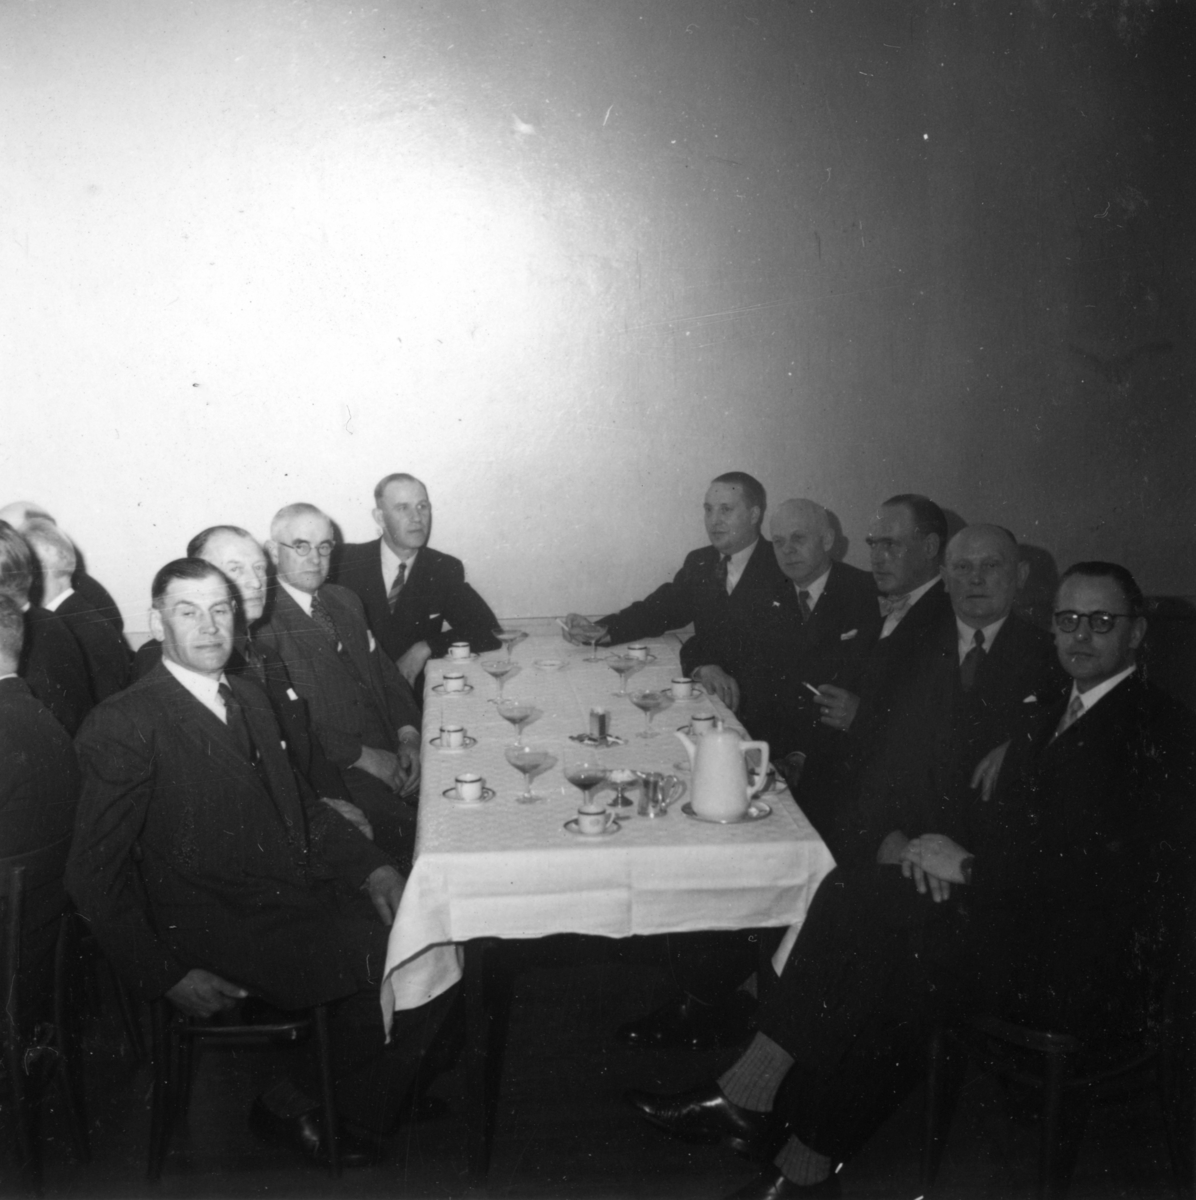 Tjänstemännen på Papyrus har personalfest, 16/4-1948.
Fr. v. nr 5 Eric Gulbransson, nr 6 Karl Dahlström, nr 7 Johansson, nr 8 Rosengren och nr 9 William Tibell.